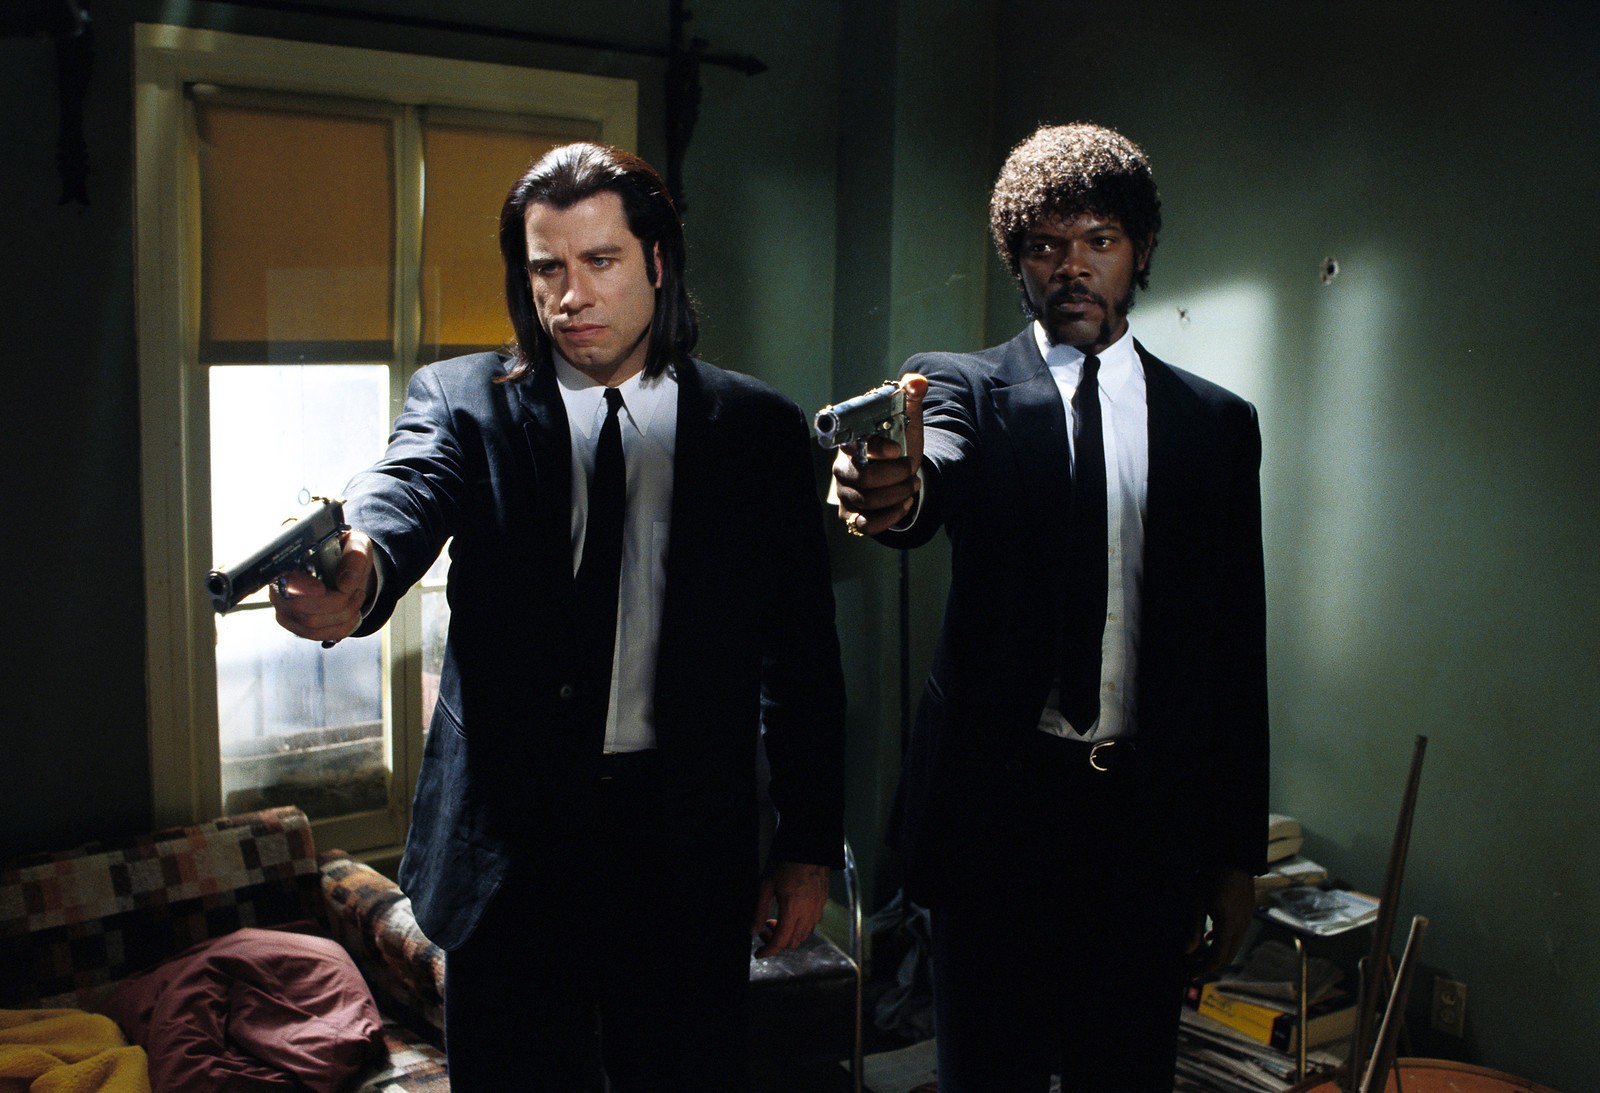 Quentin Tarantino's Pulp Fiction was made under Harvey Weinstein's Miramax